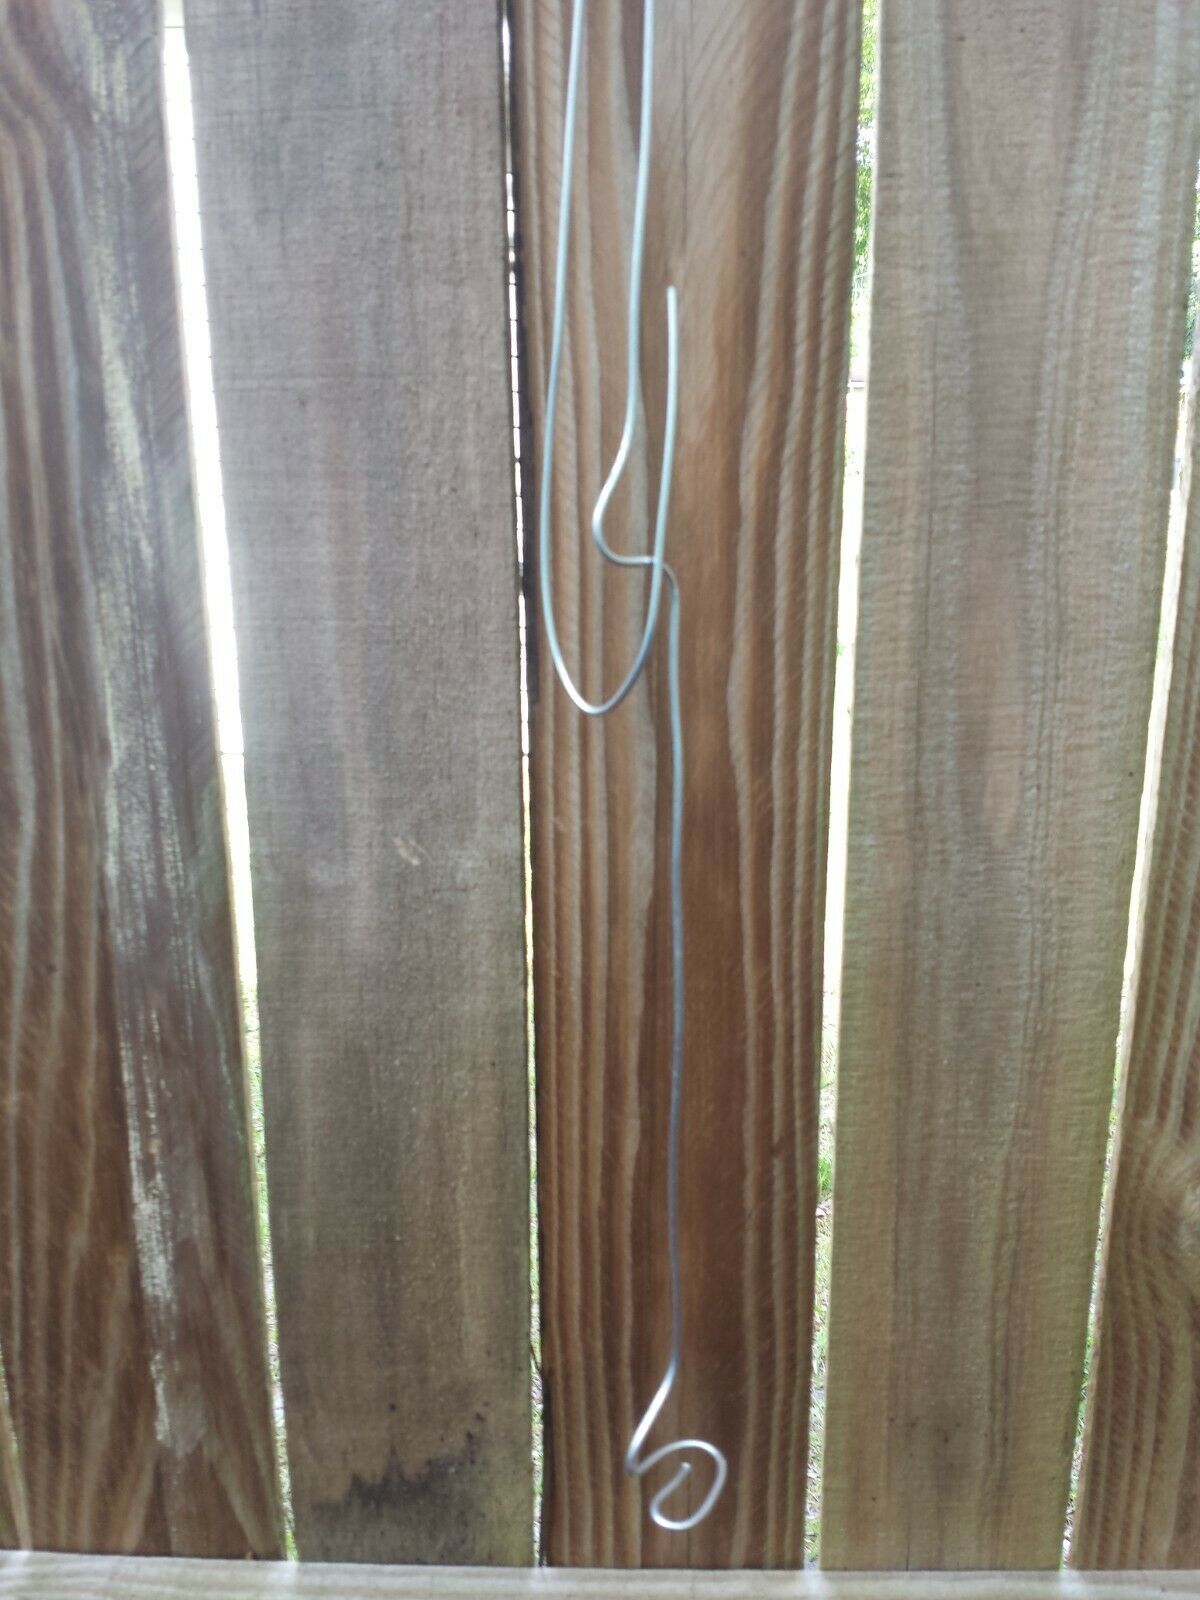 Vanda wire hanger adjustable 20 - 36" no basket needed